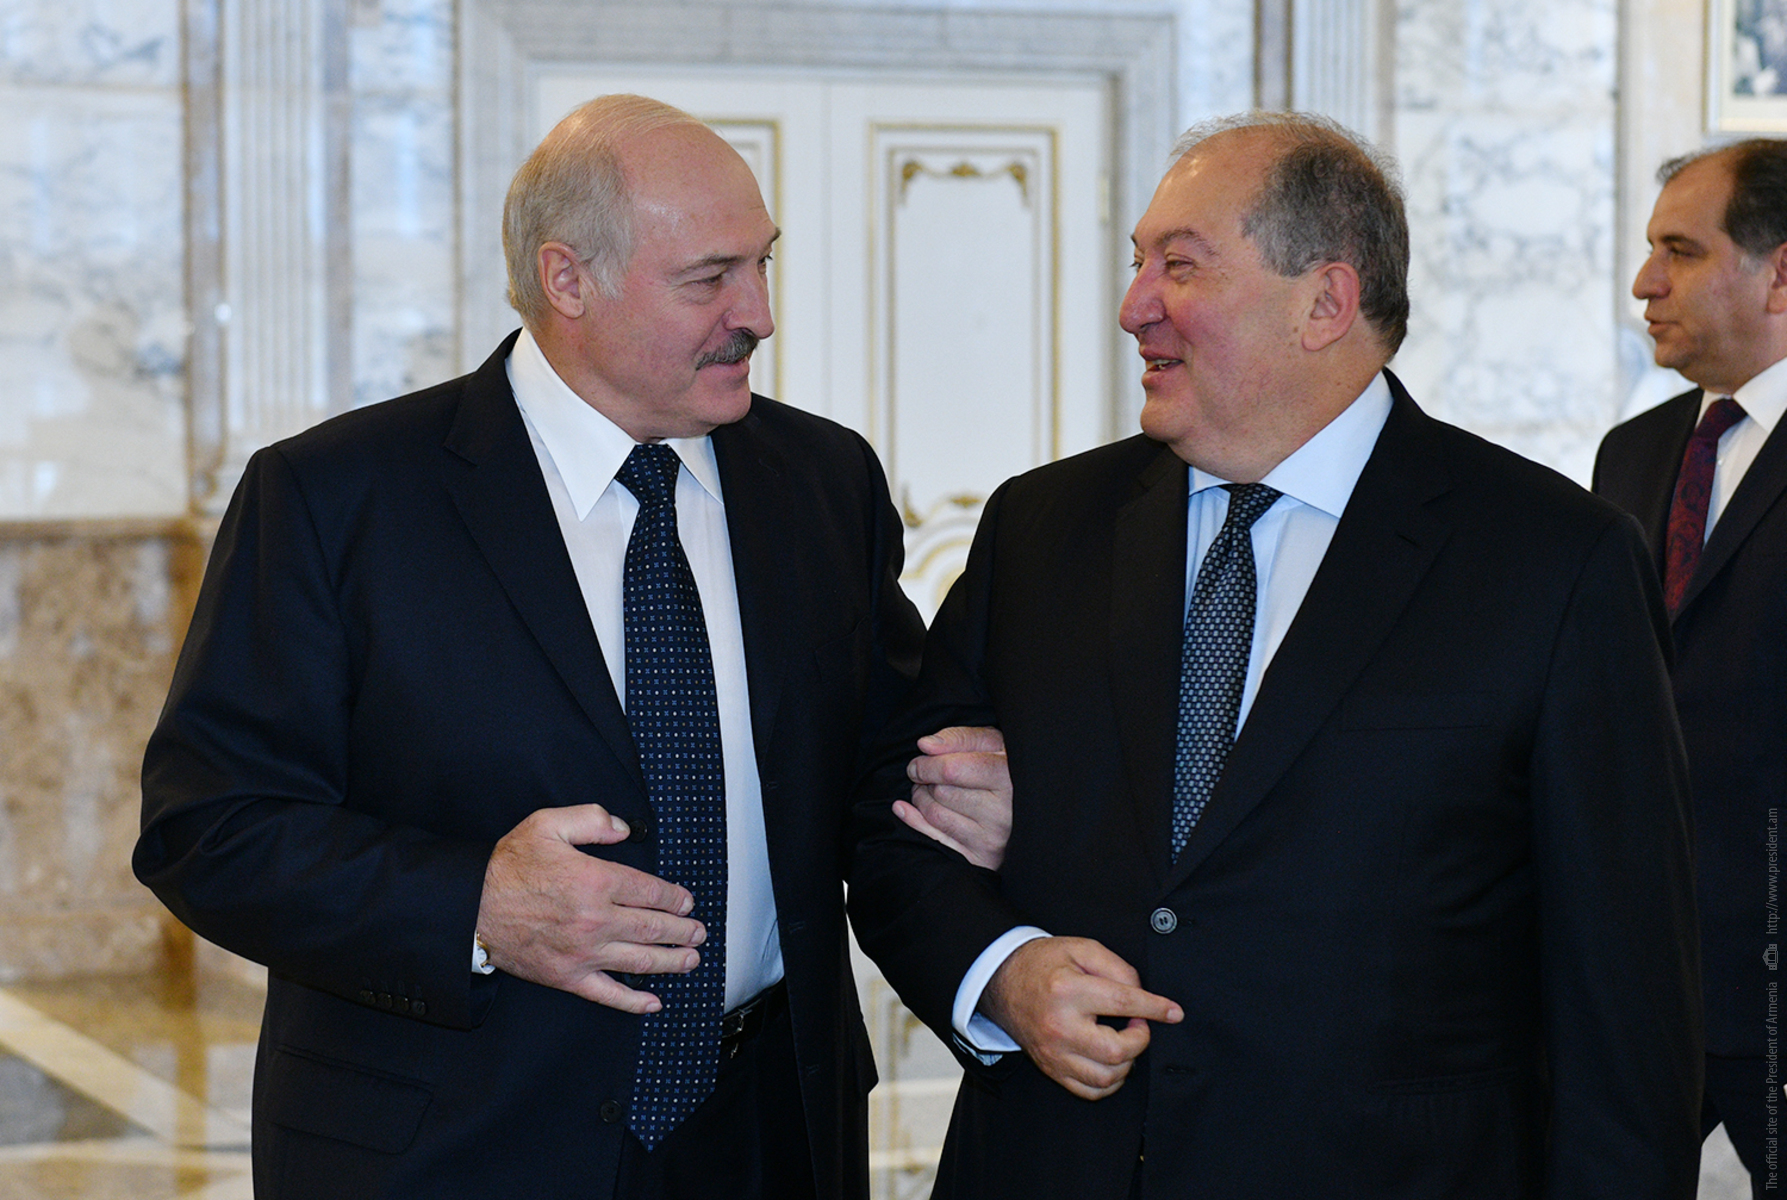 Մենք միշտ պատրաստ ենք ձեր առաջ բացելու դռները․ կայացել է Հայաստանի նախագահ Արմեն Սարգսյանի և Բելառուսի նախագահ Ալեքսանդր Լուկաշենկոյի հանդիպումը